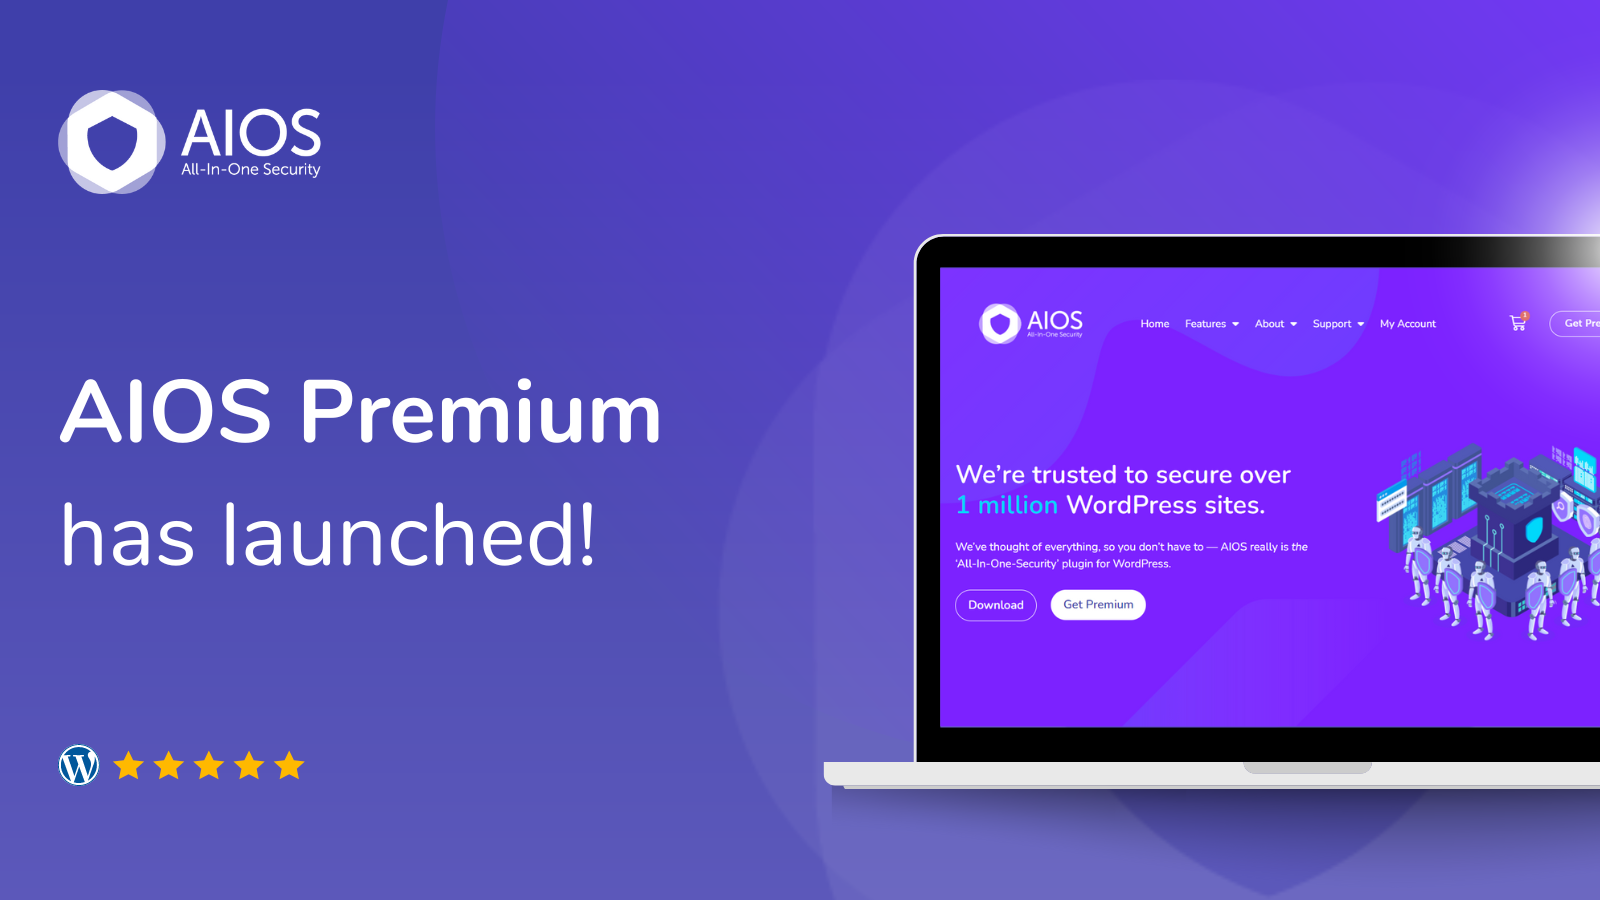 AIOS Premium has launched